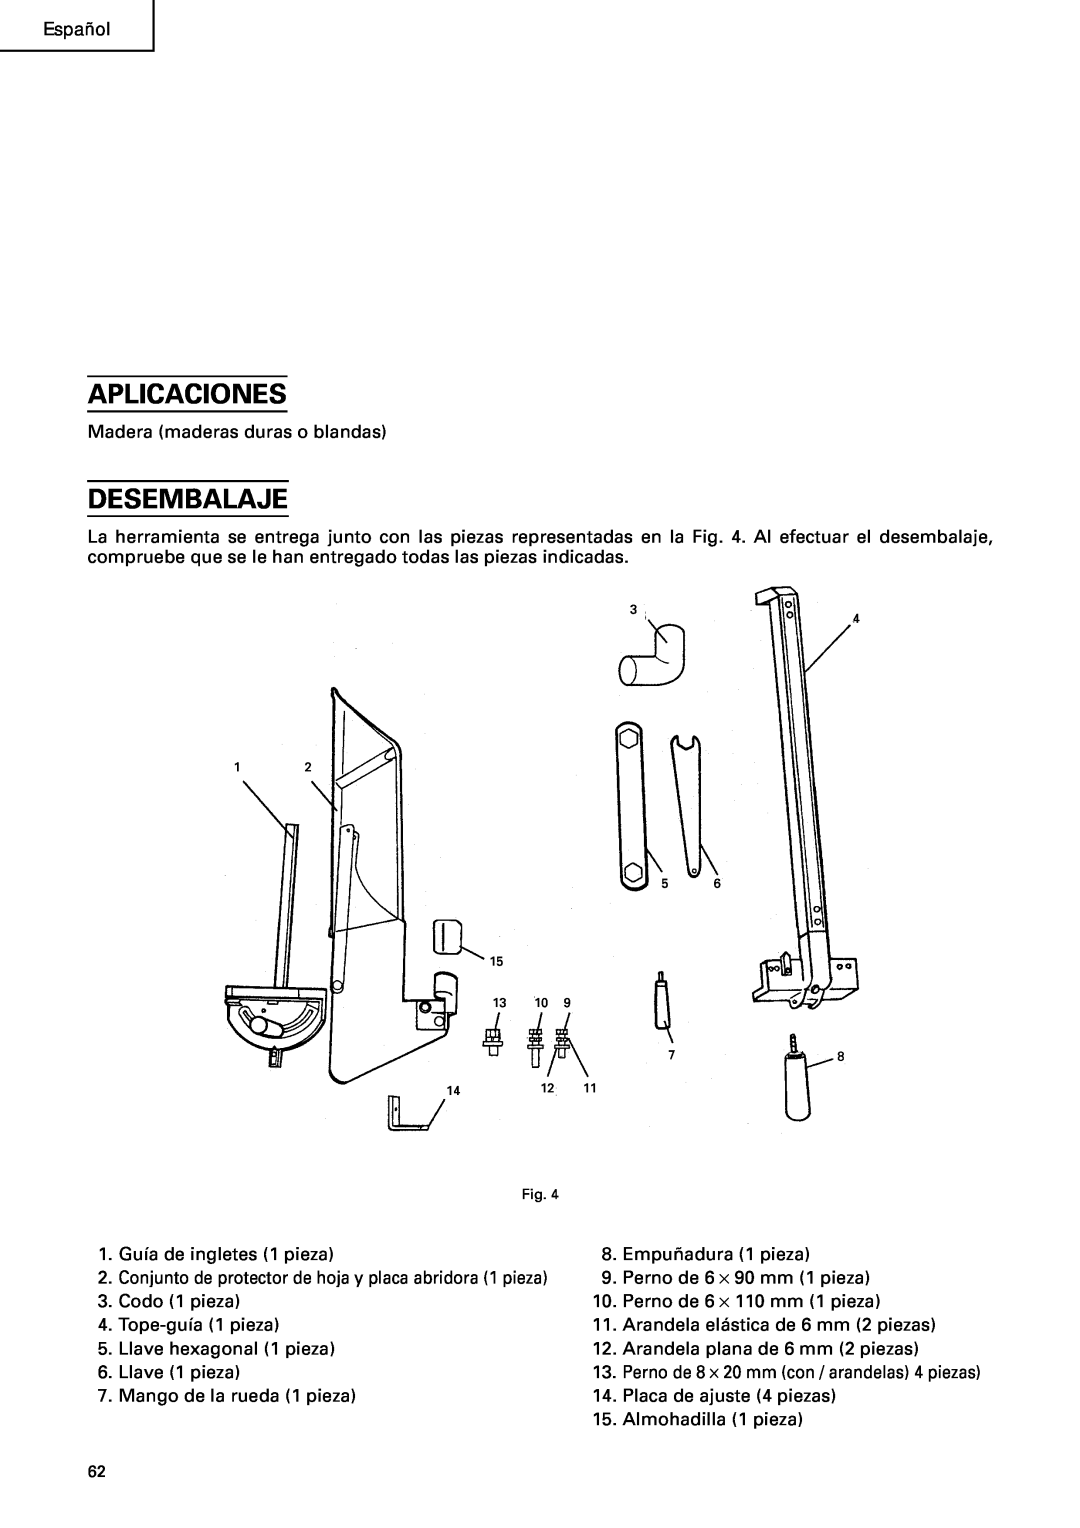 Hitachi C10RA2 instruction manual Aplicaciones, Desembalaje, Perno de 8 ⋅ 20 mm con / arandelas 4 piezas 